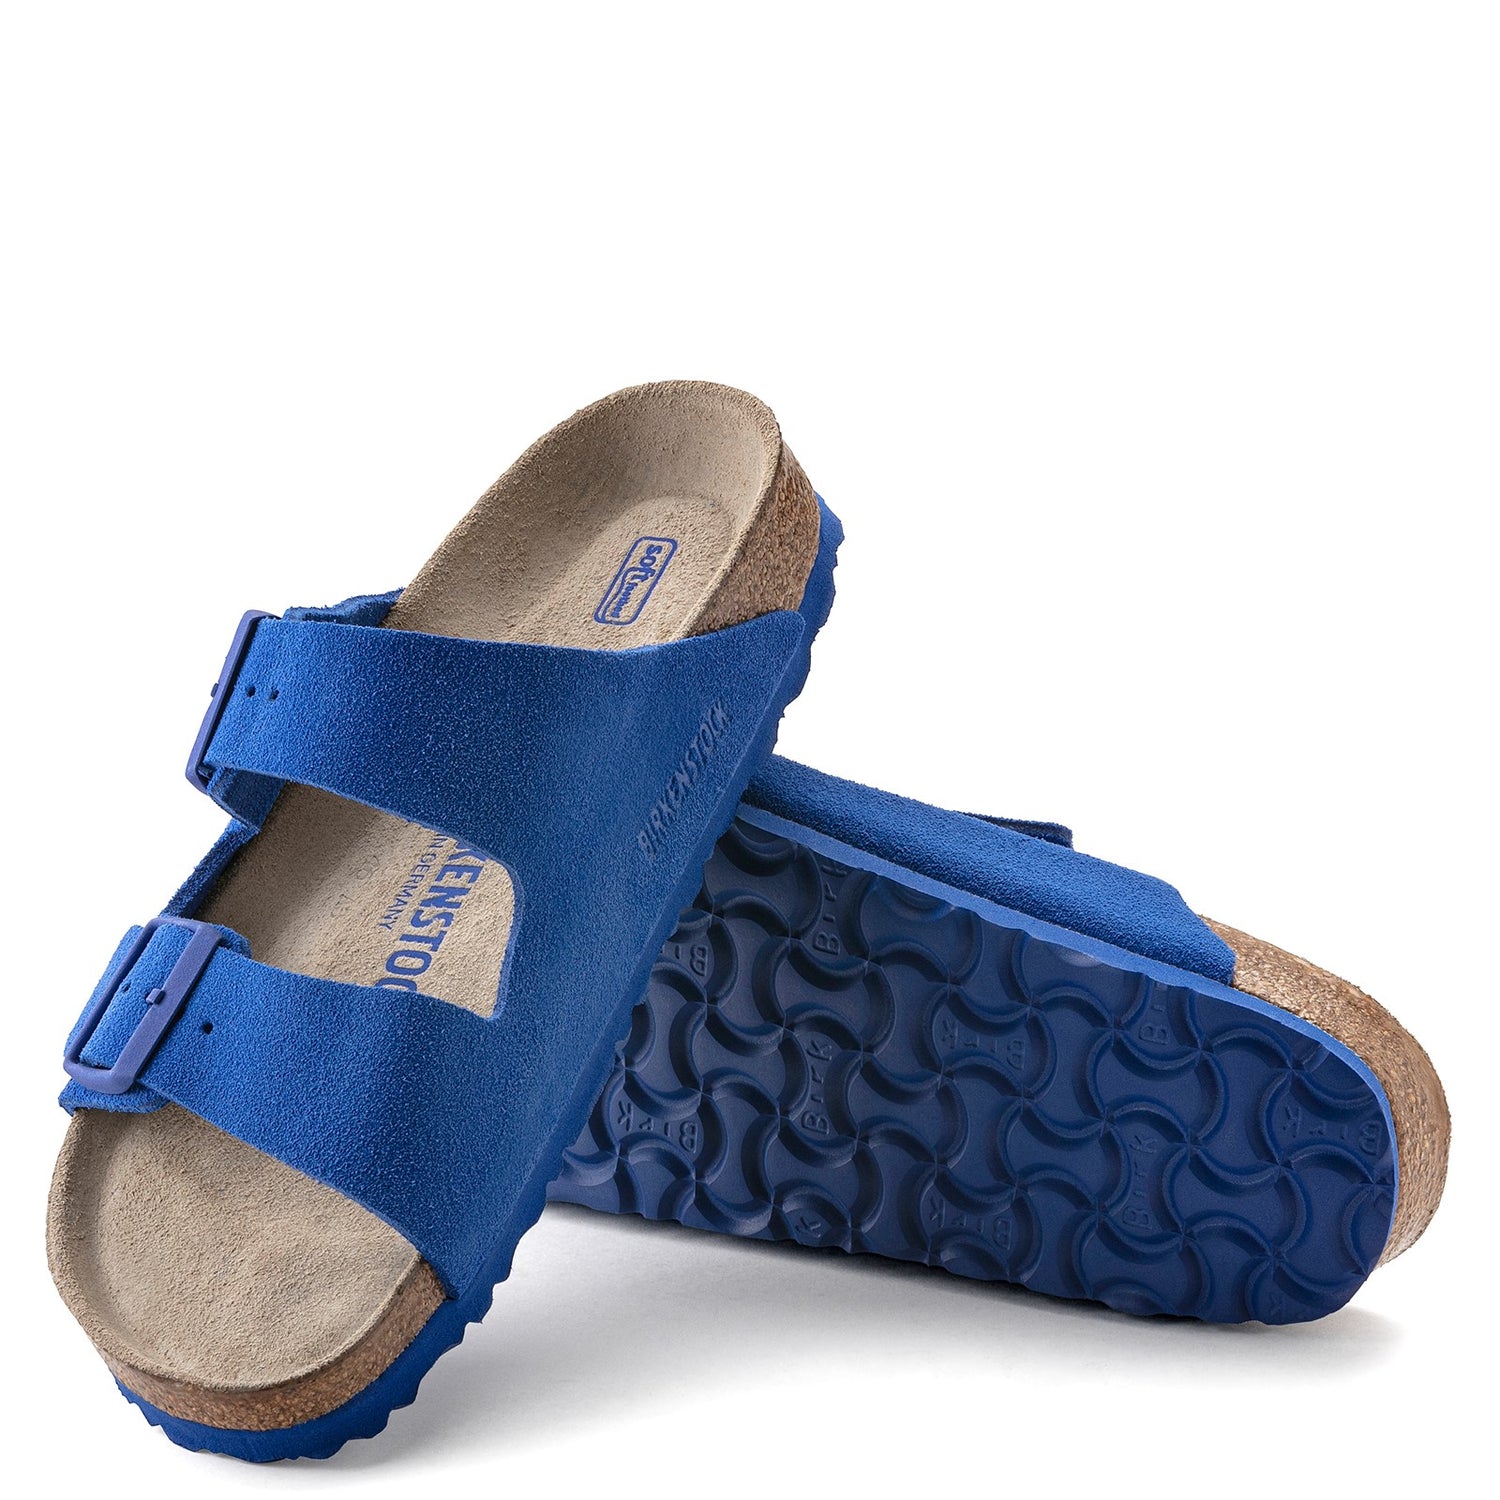 Peltz Shoes  Women's Birkenstock Arizona Soft Footbed Sandal - Narrow Width ULTRA BLUE 1022 298 N